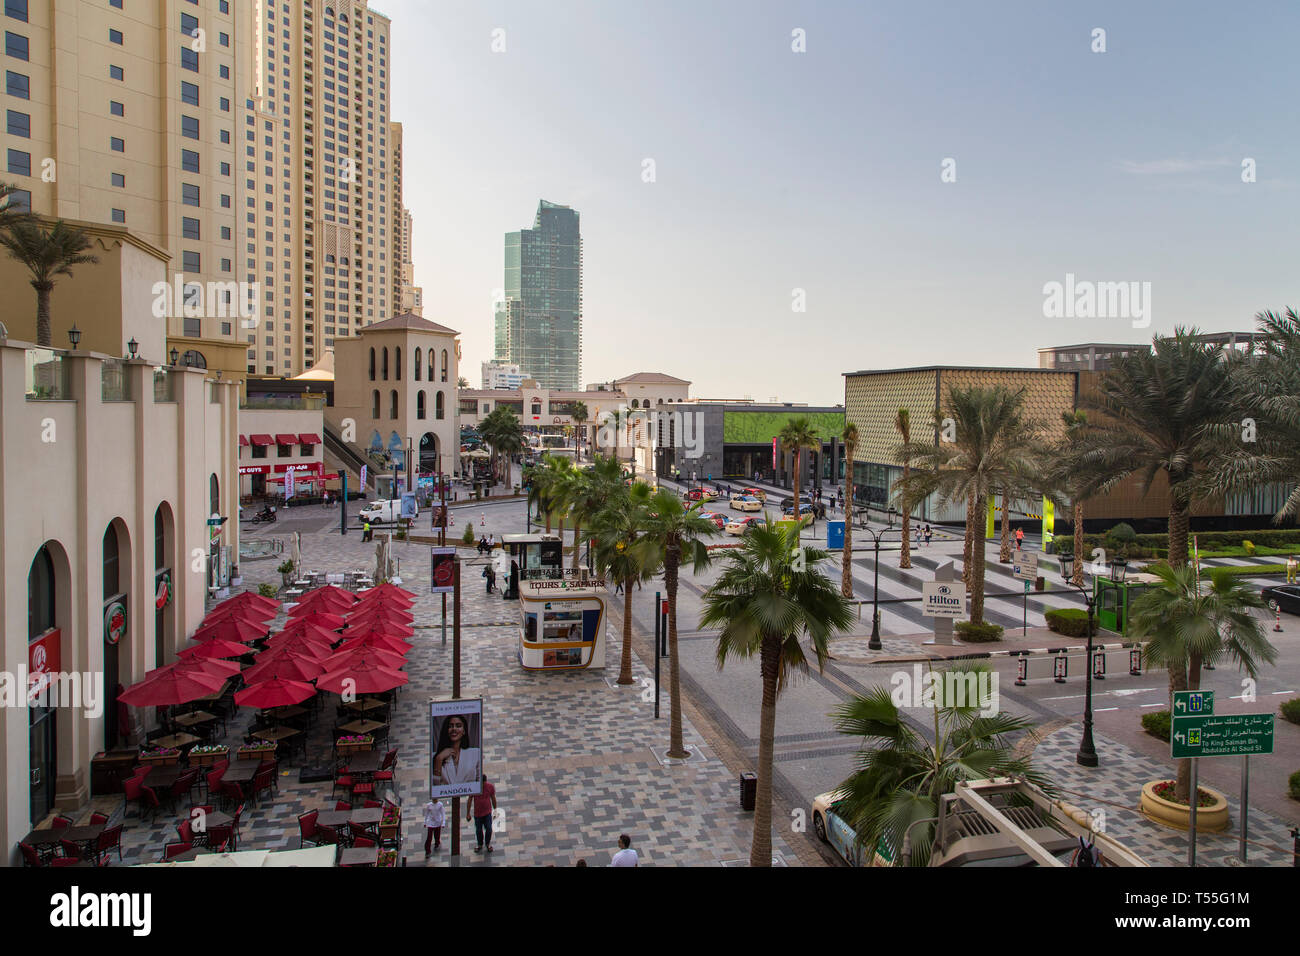 UAE, Dubai, Dubai Marina Stock Photo